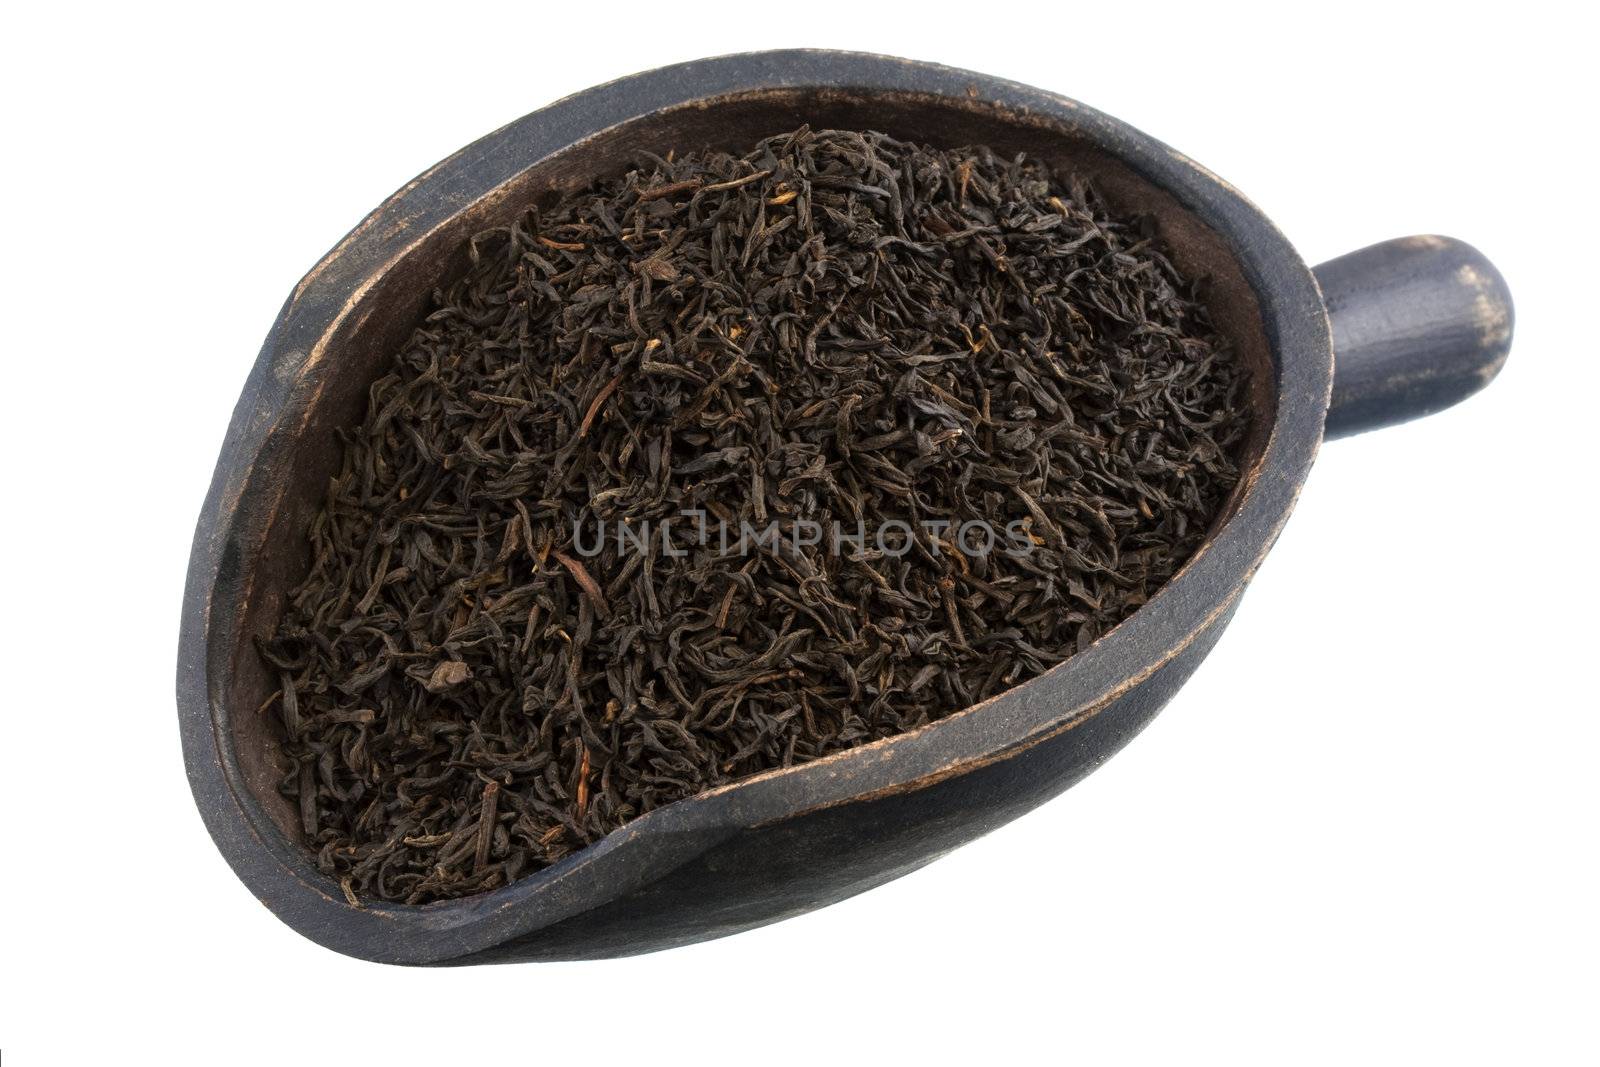 scopp of keemun oolong tea  by PixelsAway